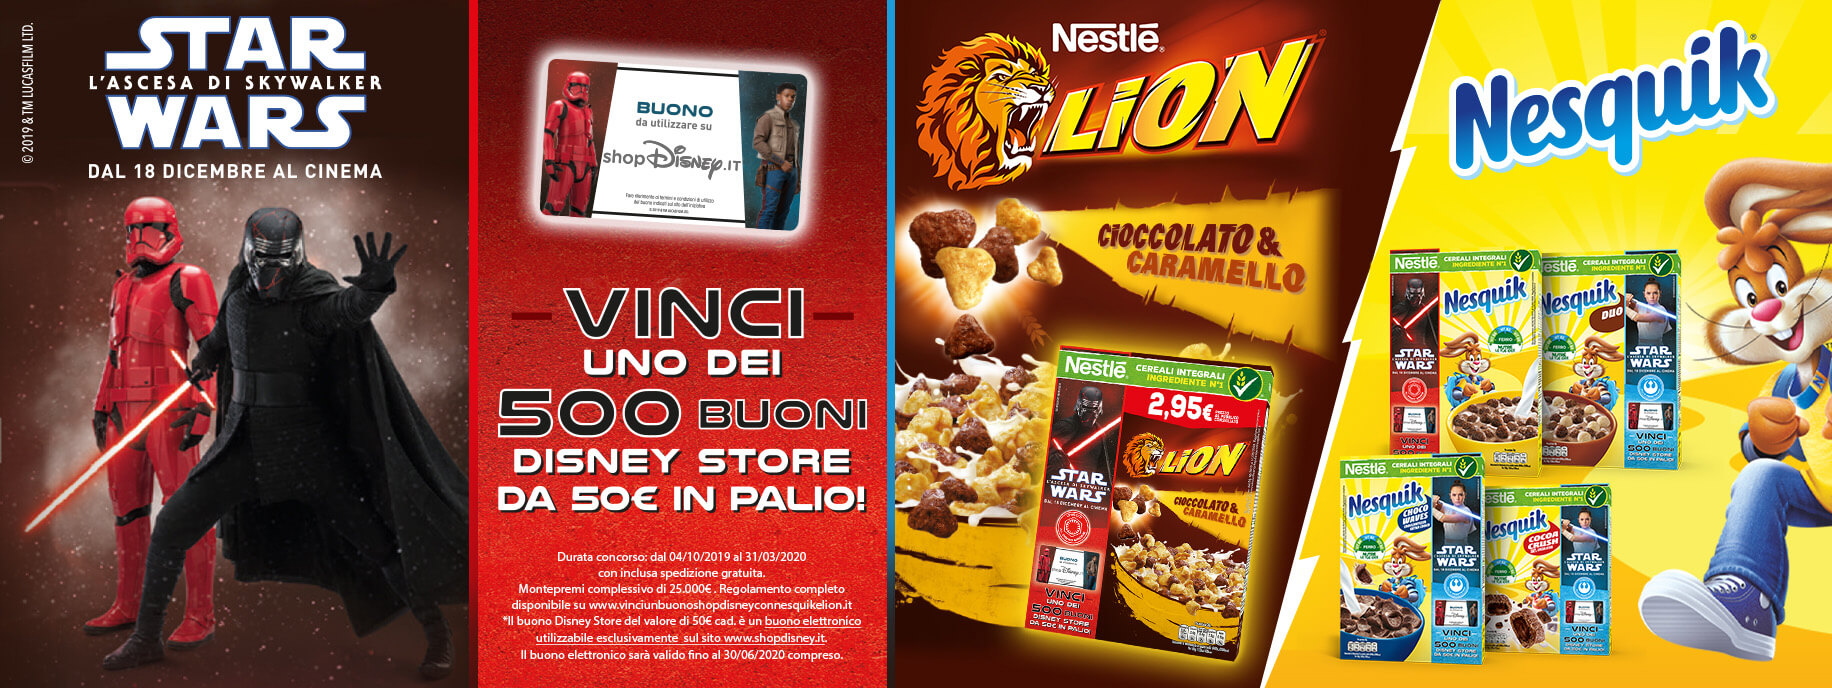 Partecipa al concorso Cereali Nesquik e Lion Nestlé